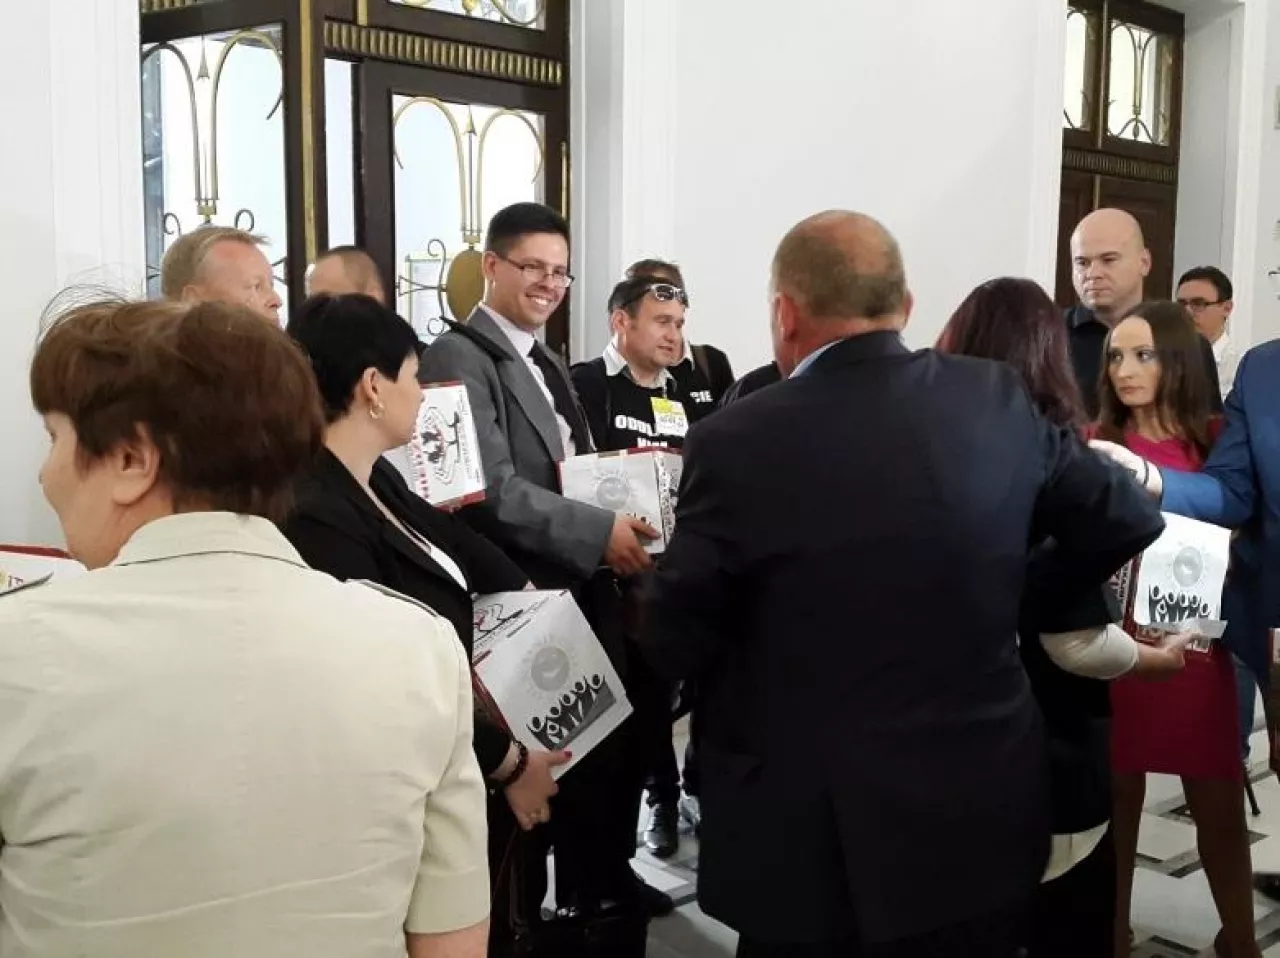 2 września związkowcy z NSZZ ”Solidarność” złożyli w Biurze Podawczym Sejmu prawie 520 tys. podpisów pod projektem ustawy ograniczającej handel w niedziele (fot. wiadomoscihandlowe.pl)